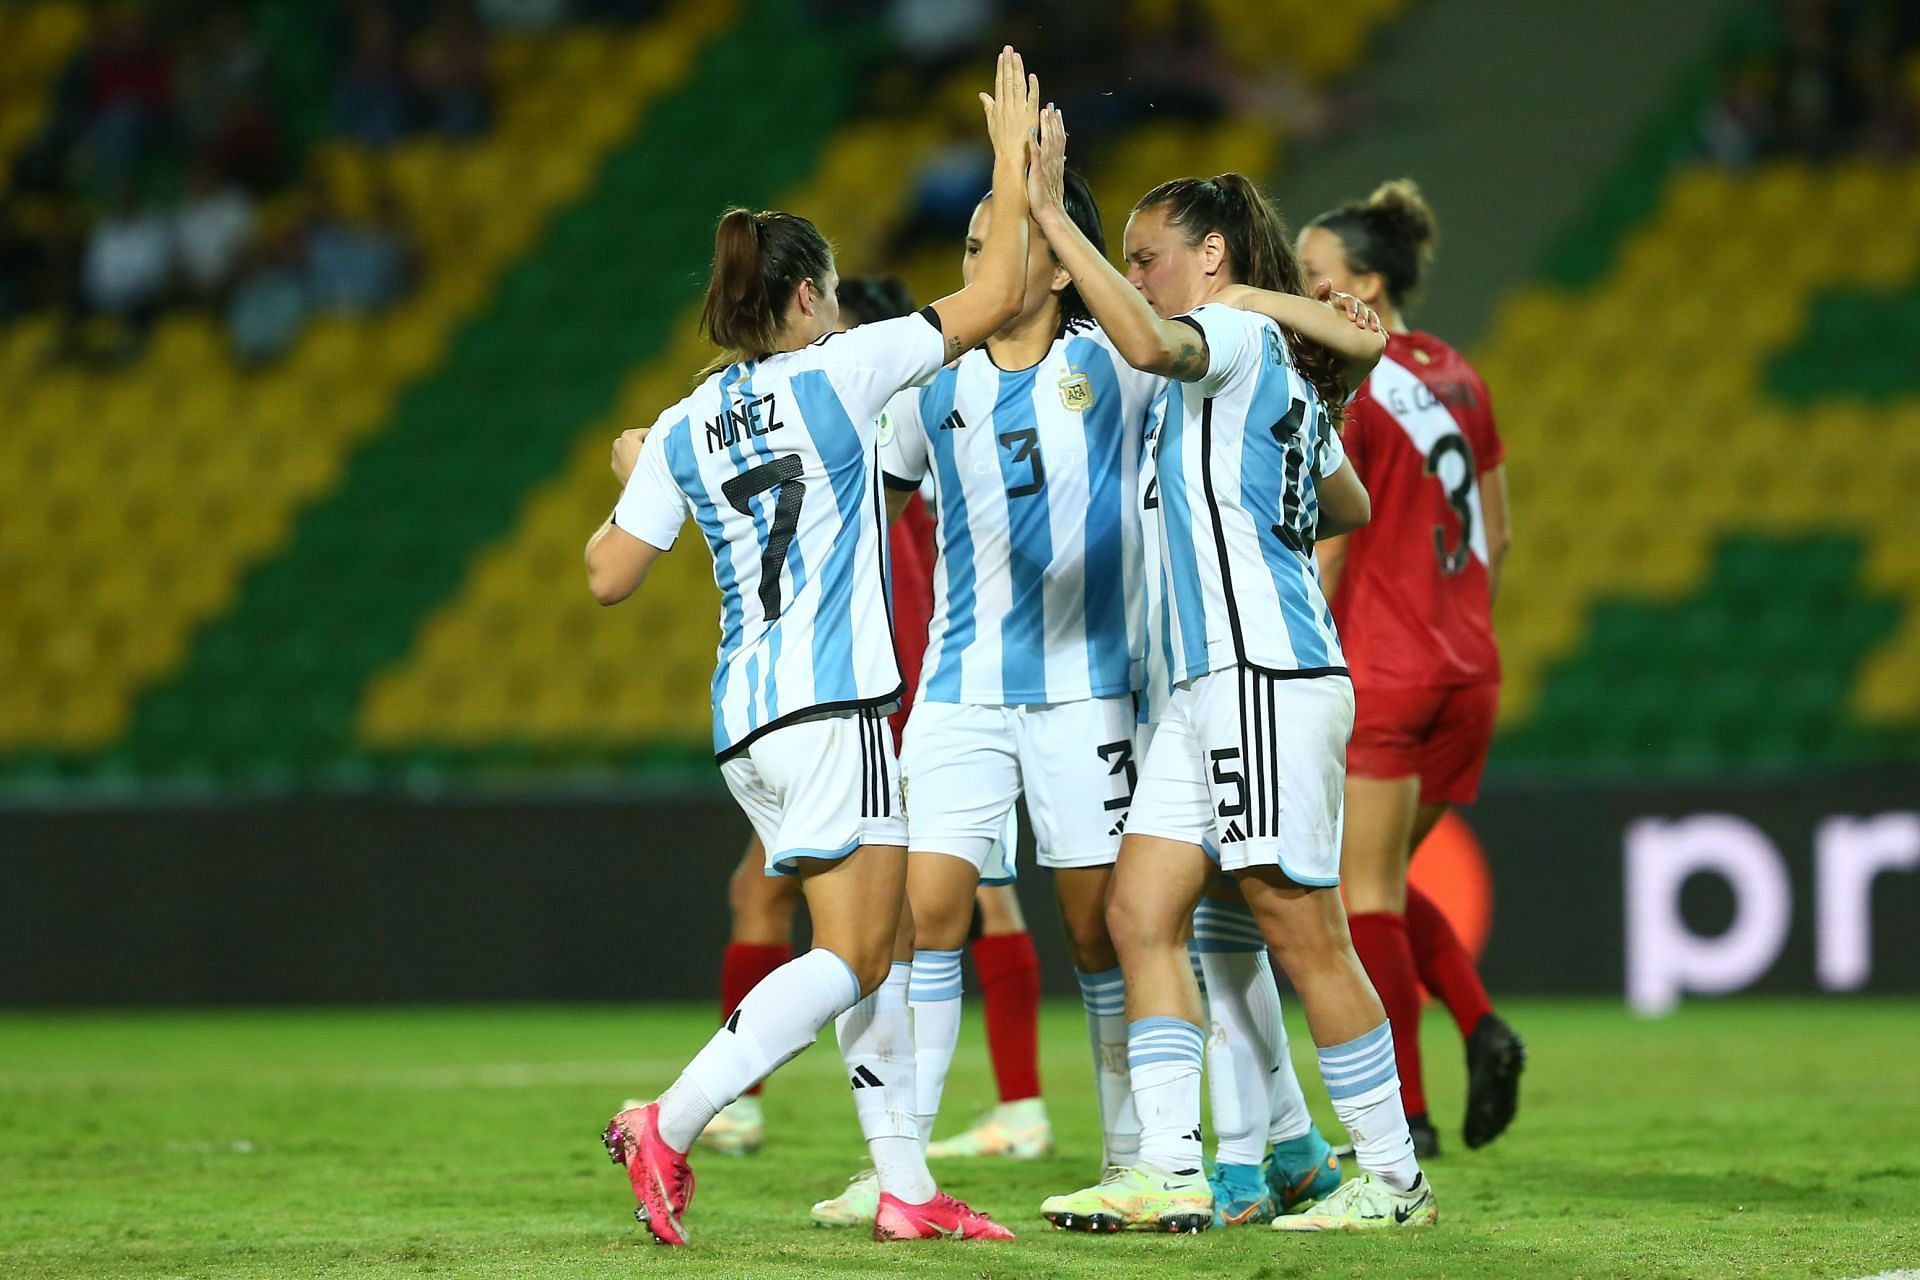 Argentina Women will meet Peru Women in an international friendly on Friday